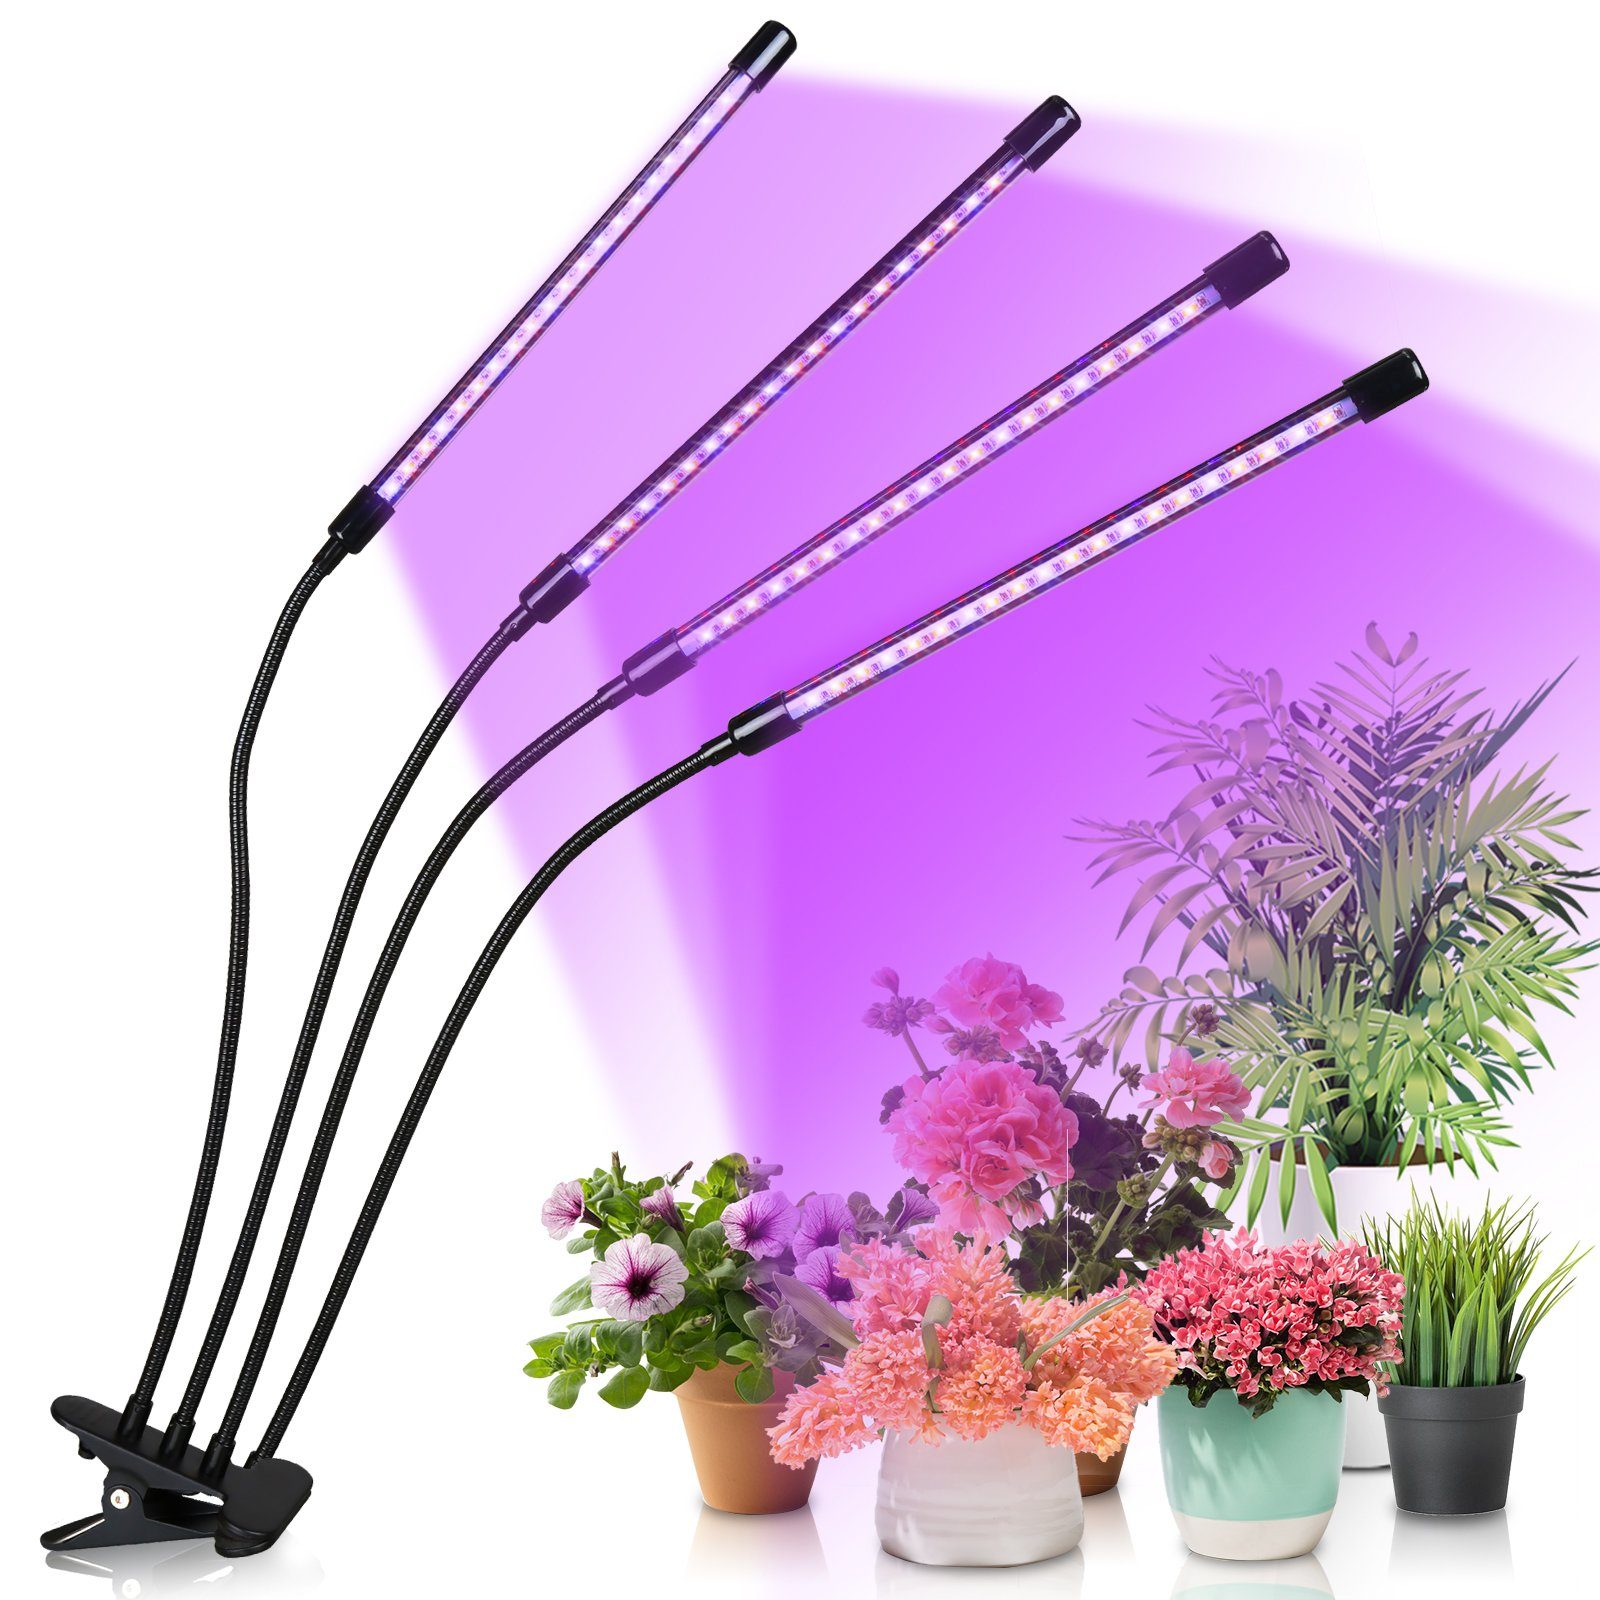 Pflanzenleuchte, Köpfe Pflanzenlampe Wachstumslampe Pflanzenlicht Lampe Dimmstufen LED 4 Vollspektrum 80 Grow Pflanzen Zimmerpflanzen 10 LED Lospitch LEDs